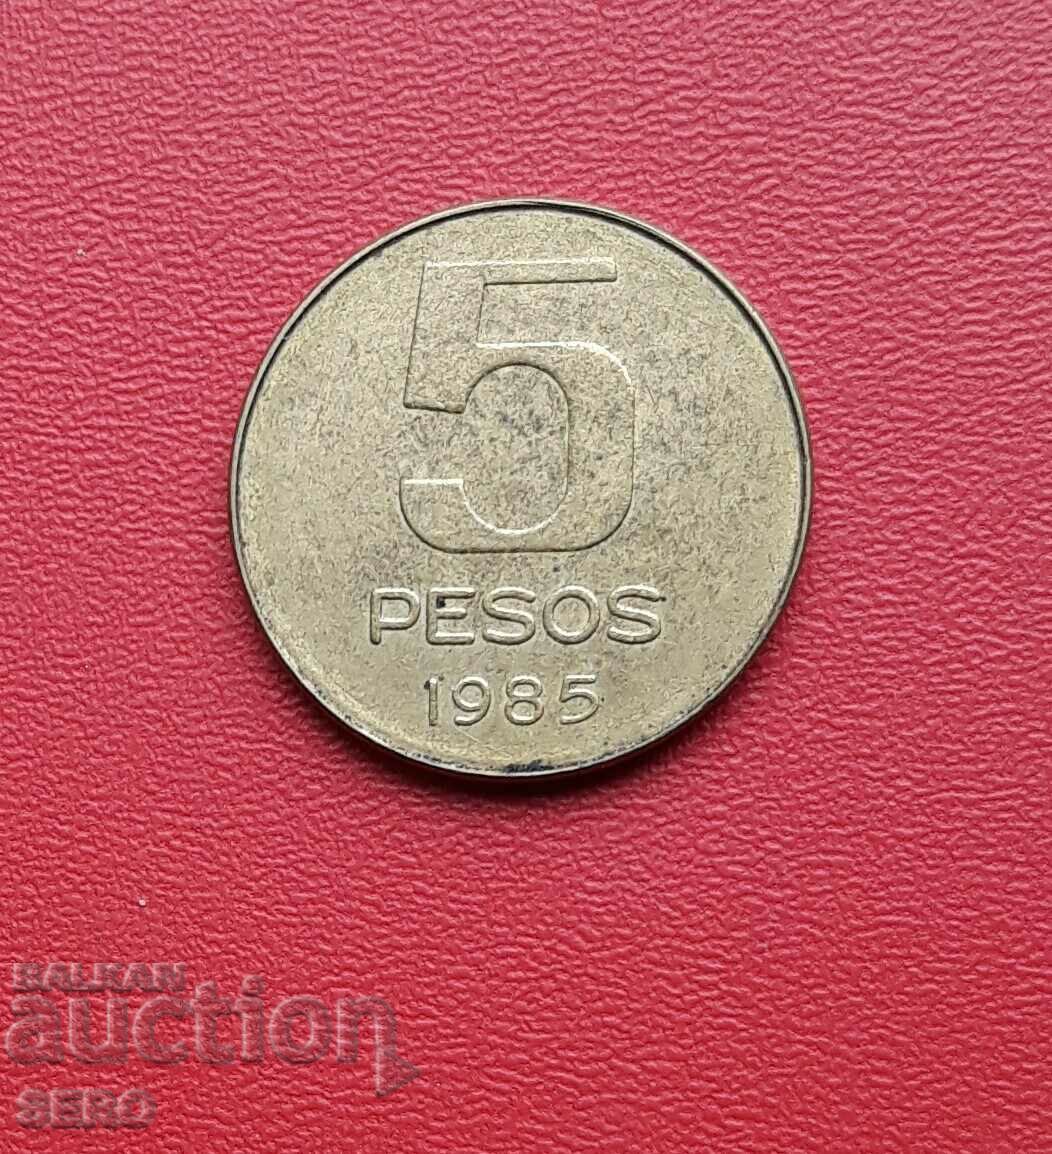 Argentina-5 pesos 1985